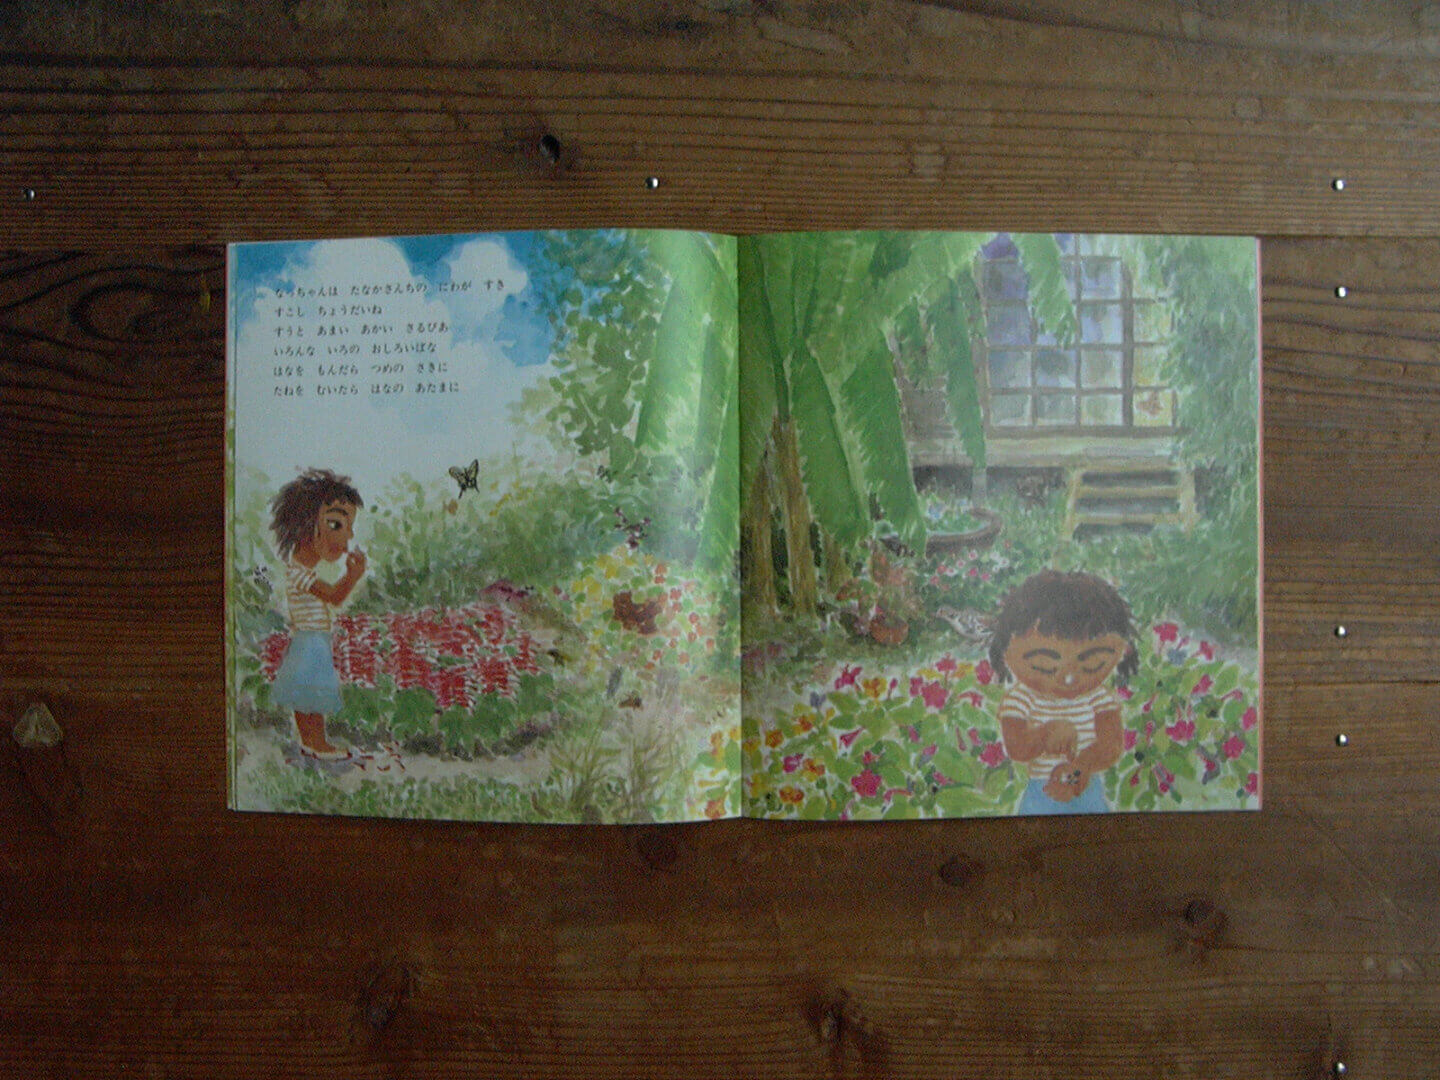 月刊かがくのとも 2003年9月号「なっちゃんのなつ」の、田舎の家の庭にいる様子が描かれたページ